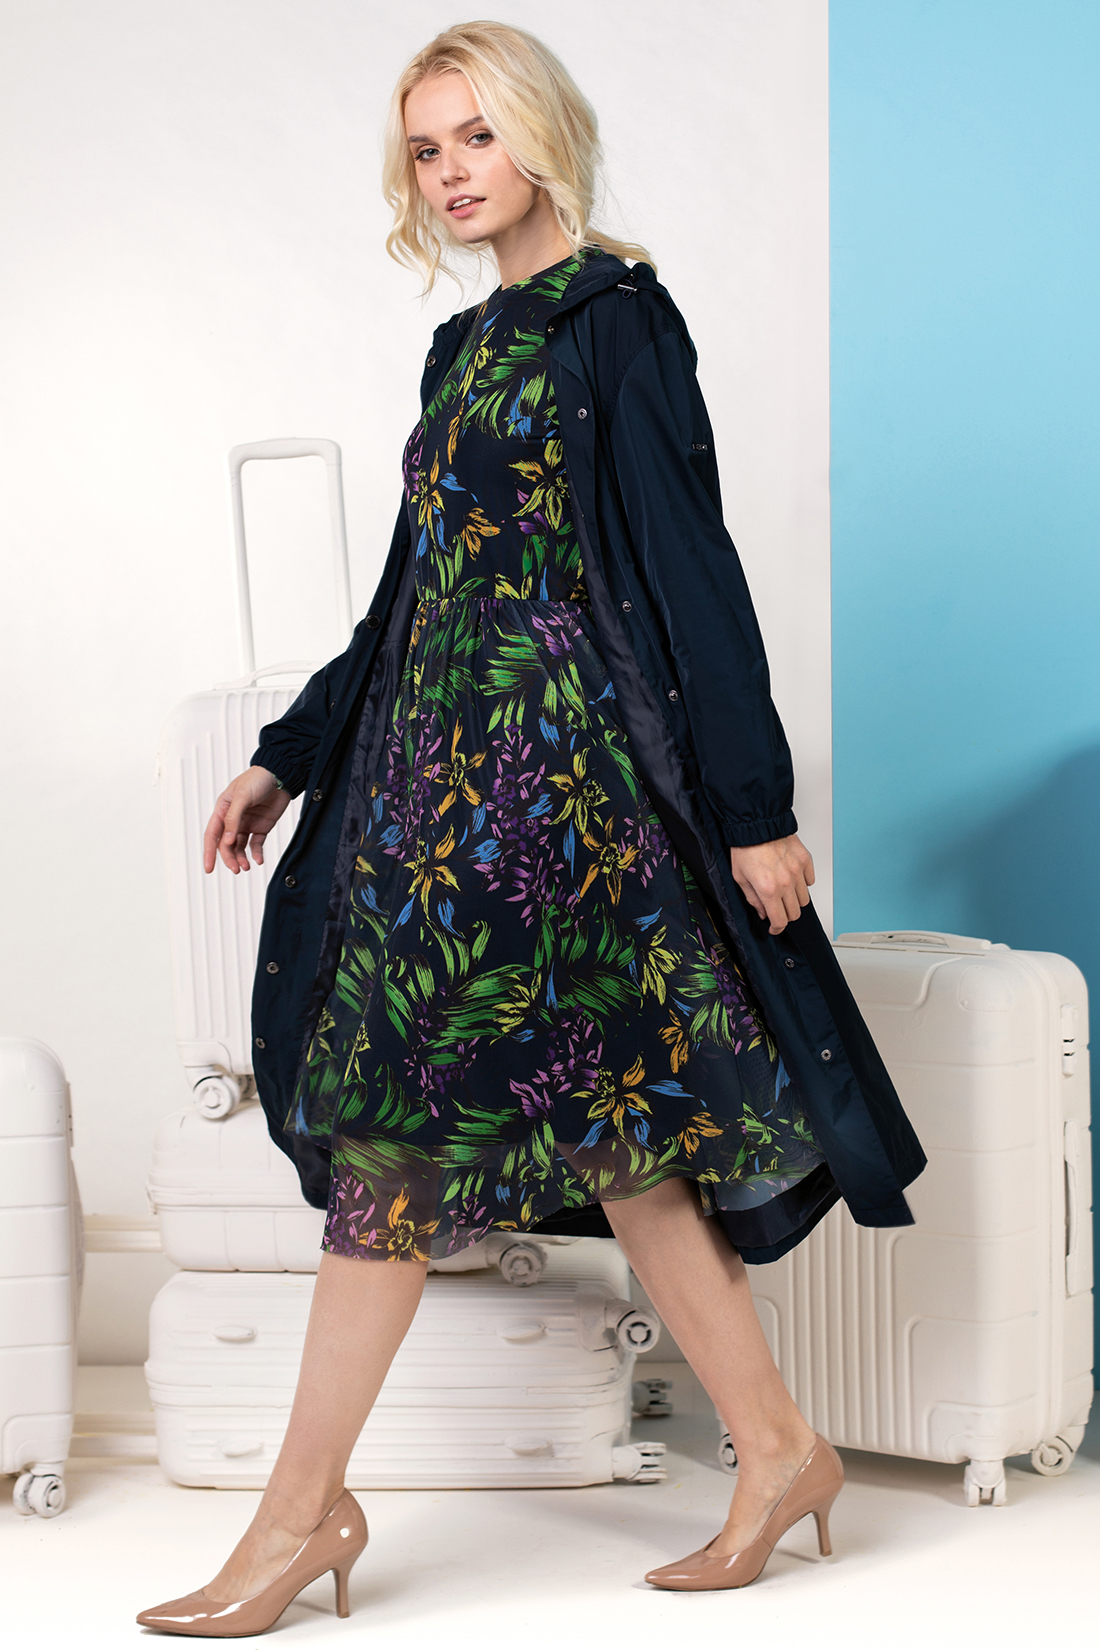 Платье из трикотажной сетки (арт. baon B459100), размер XS, цвет dark navy printed#синий Платье из трикотажной сетки (арт. baon B459100) - фото 1